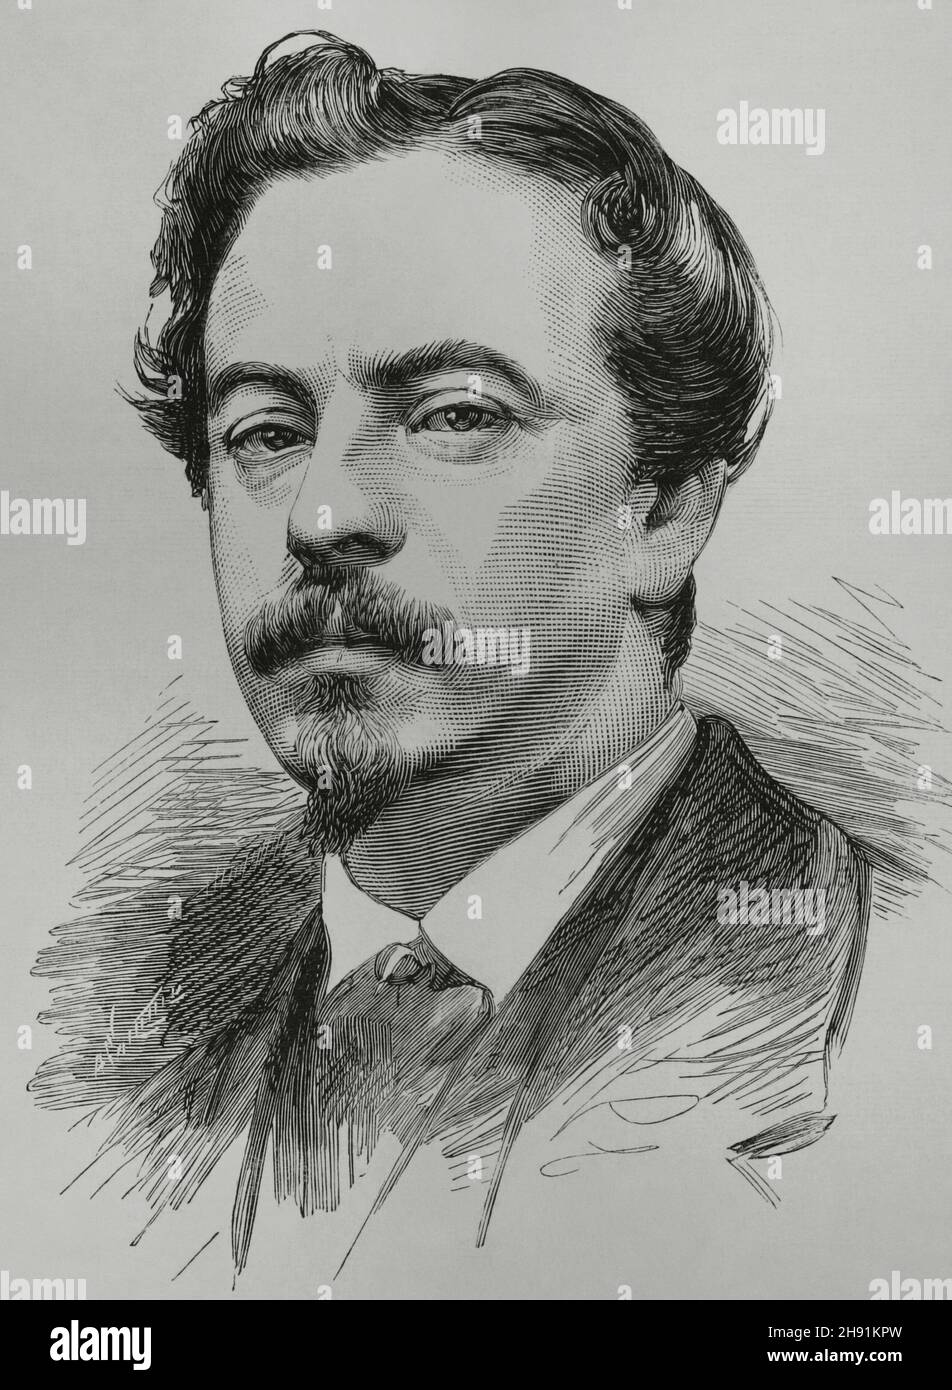 Ignacio Suárez Llanos (1830-1881).Peintre et illustrateur espagnol du XIXe siècle.Portrait.Gravure.La Ilustración Española y Americana, 1882. Banque D'Images